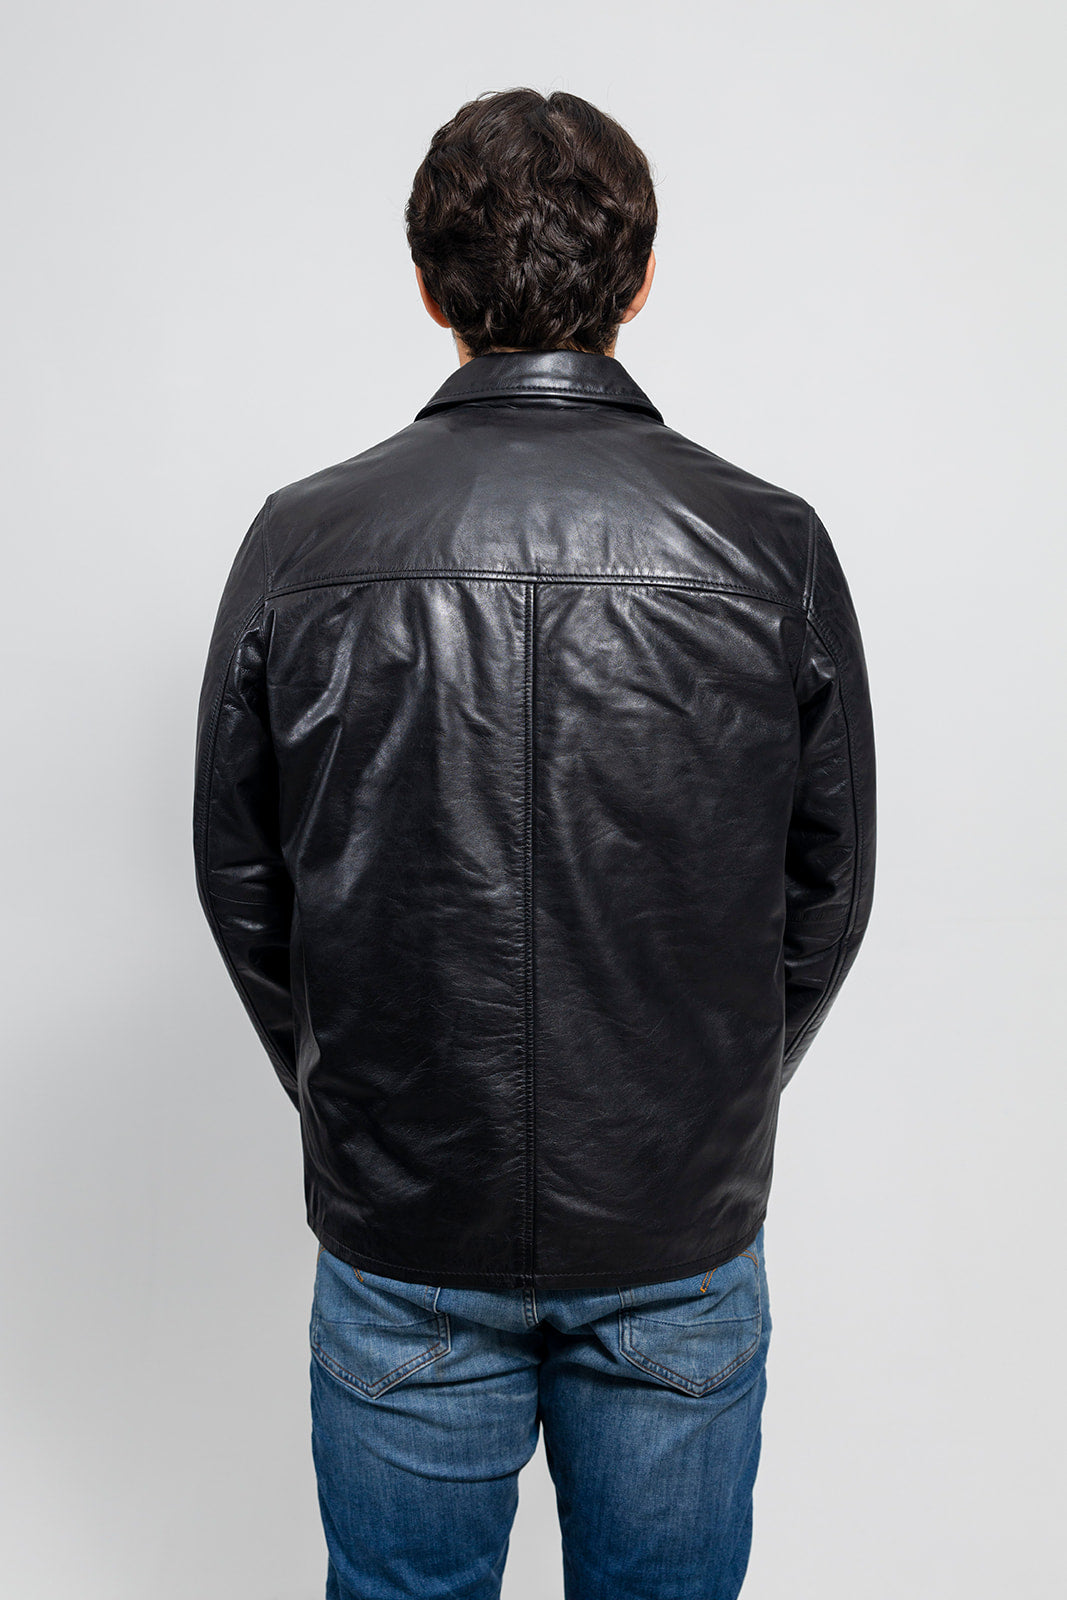 Indiana Mens Leather Jacket Men's Leather Jacket Whet Blu NYC   